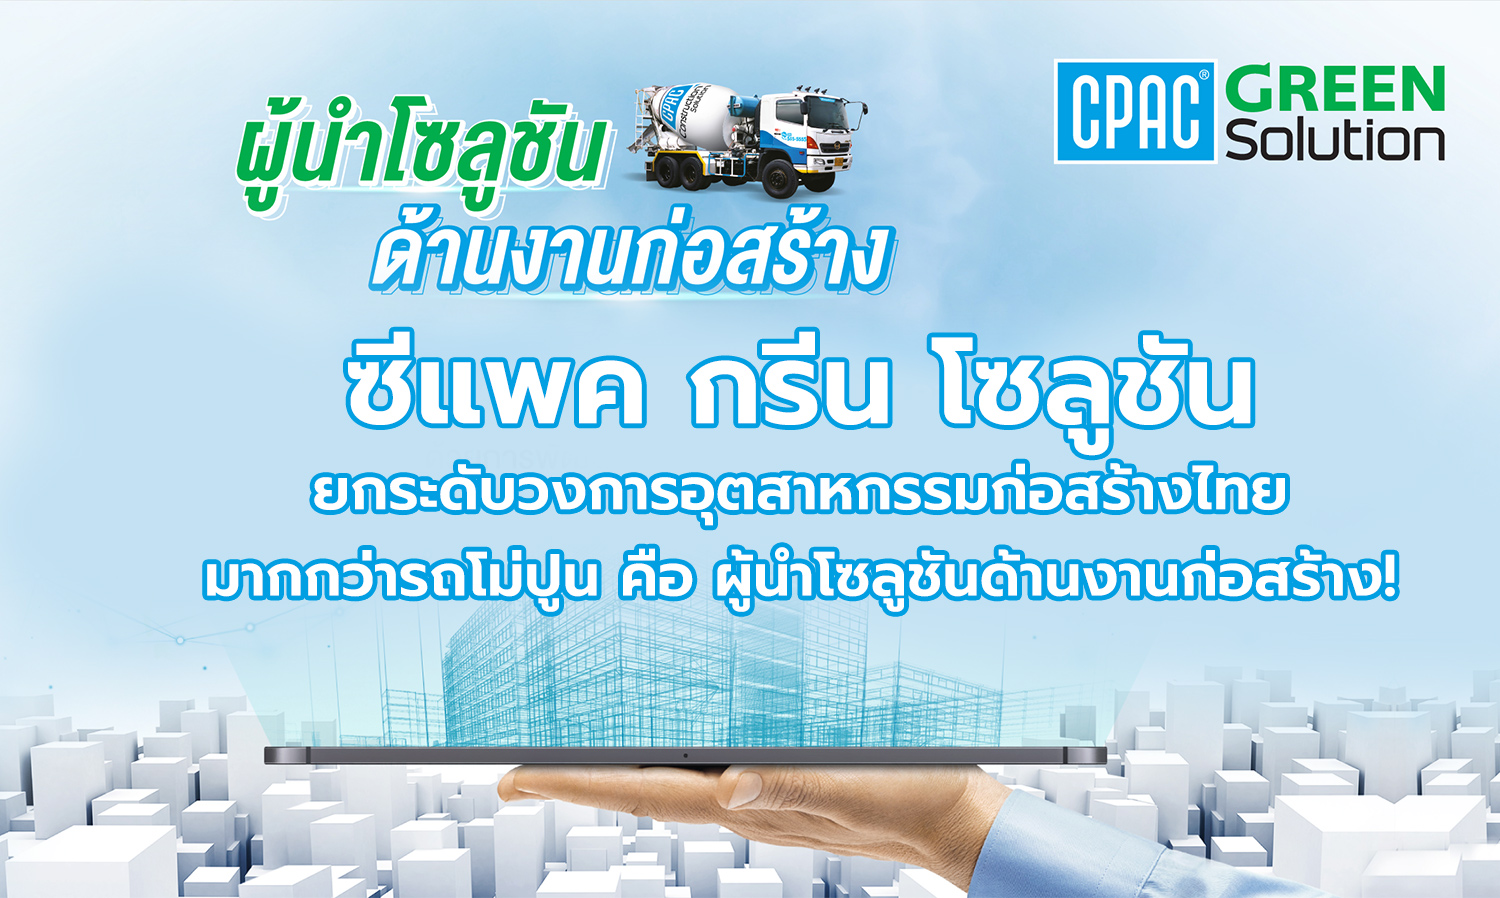 ซีแพค กรีน โซลูชัน ยกระดับวงการอุตสาหกรรมก่อสร้างไทย มากกว่ารถโม่ปูน คือ ผู้นำโซลูชันด้านงานก่อสร้าง!